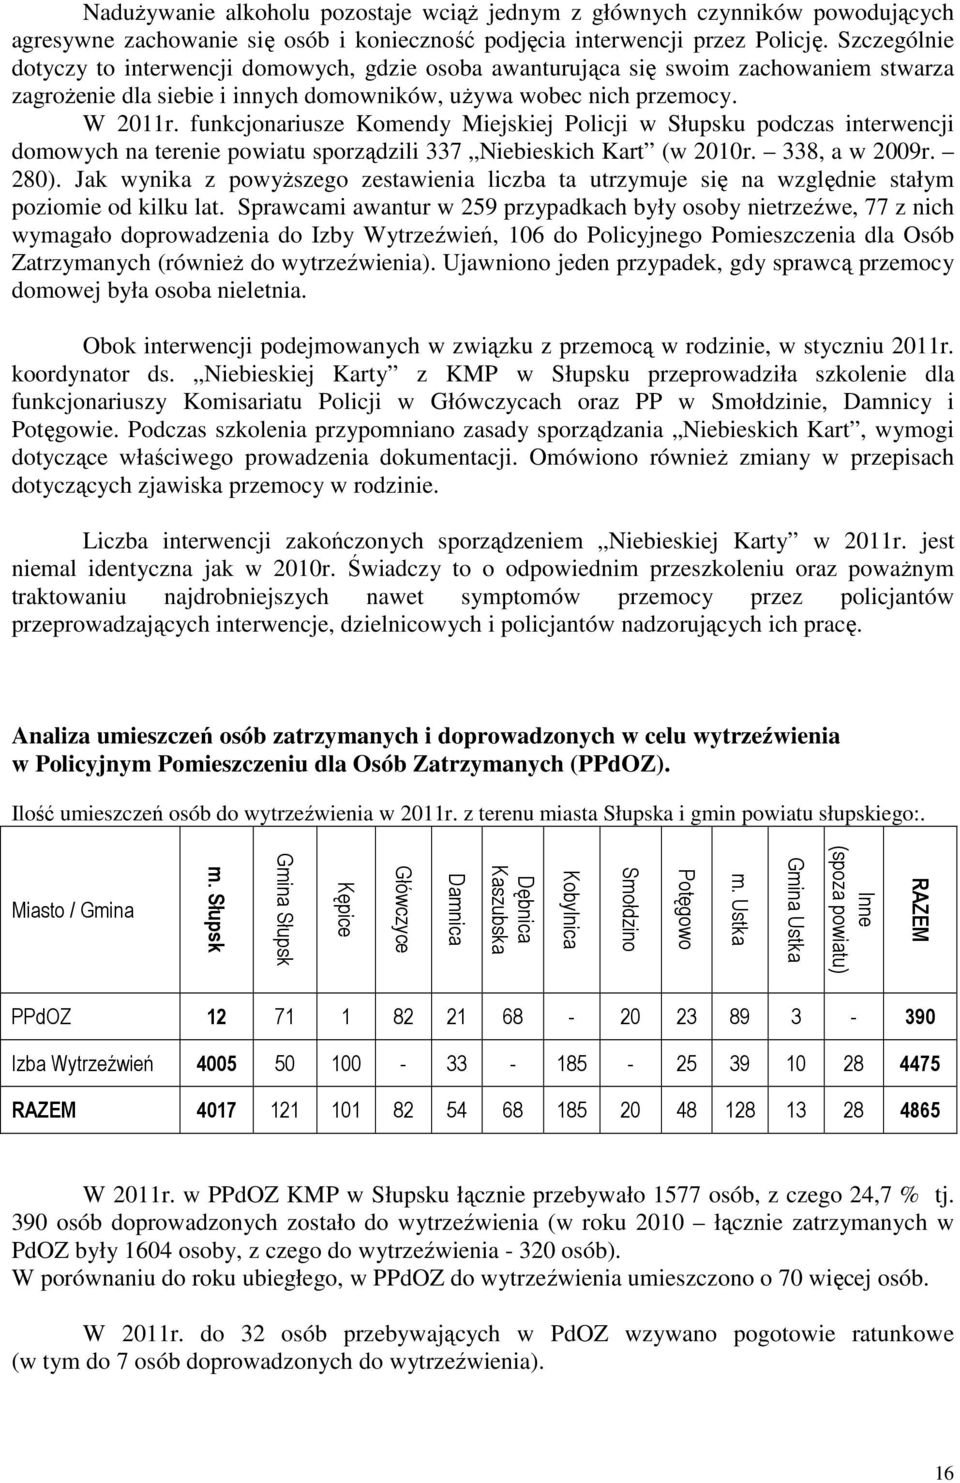 funkcjonariusze Komendy Miejskiej Policji w Słupsku podczas interwencji domowych na terenie powiatu sporządzili 337 Niebieskich Kart (w 2010r. 338, a w 2009r. 280).